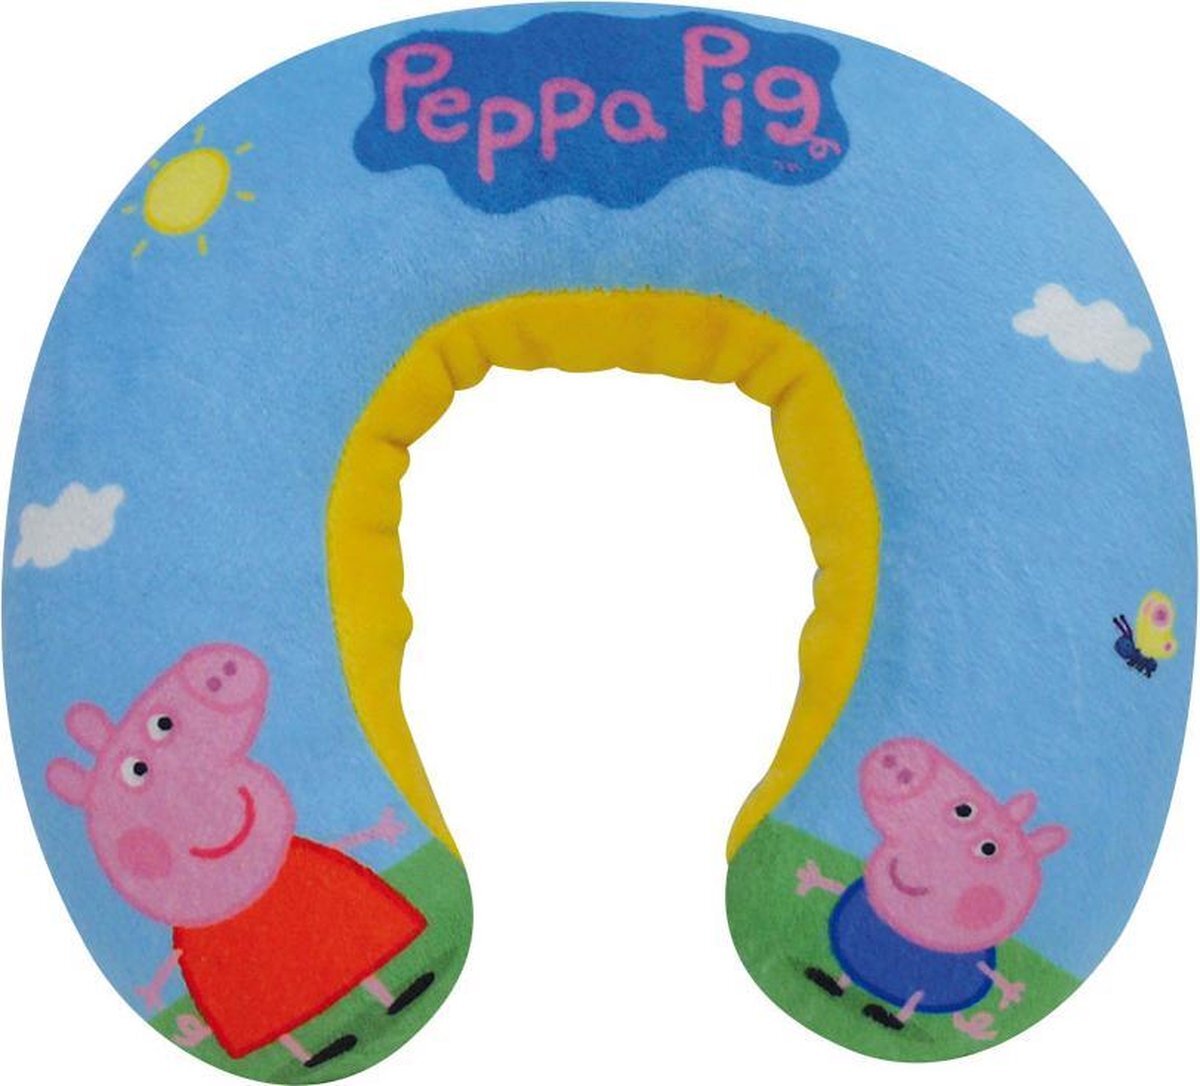 Peppa Pig Blauwe Peppa Big/pig Nickelodeon Nekkussen Voor Jongens - Nekkussens/reiskussens - Vakantie/op Reis Accessoires